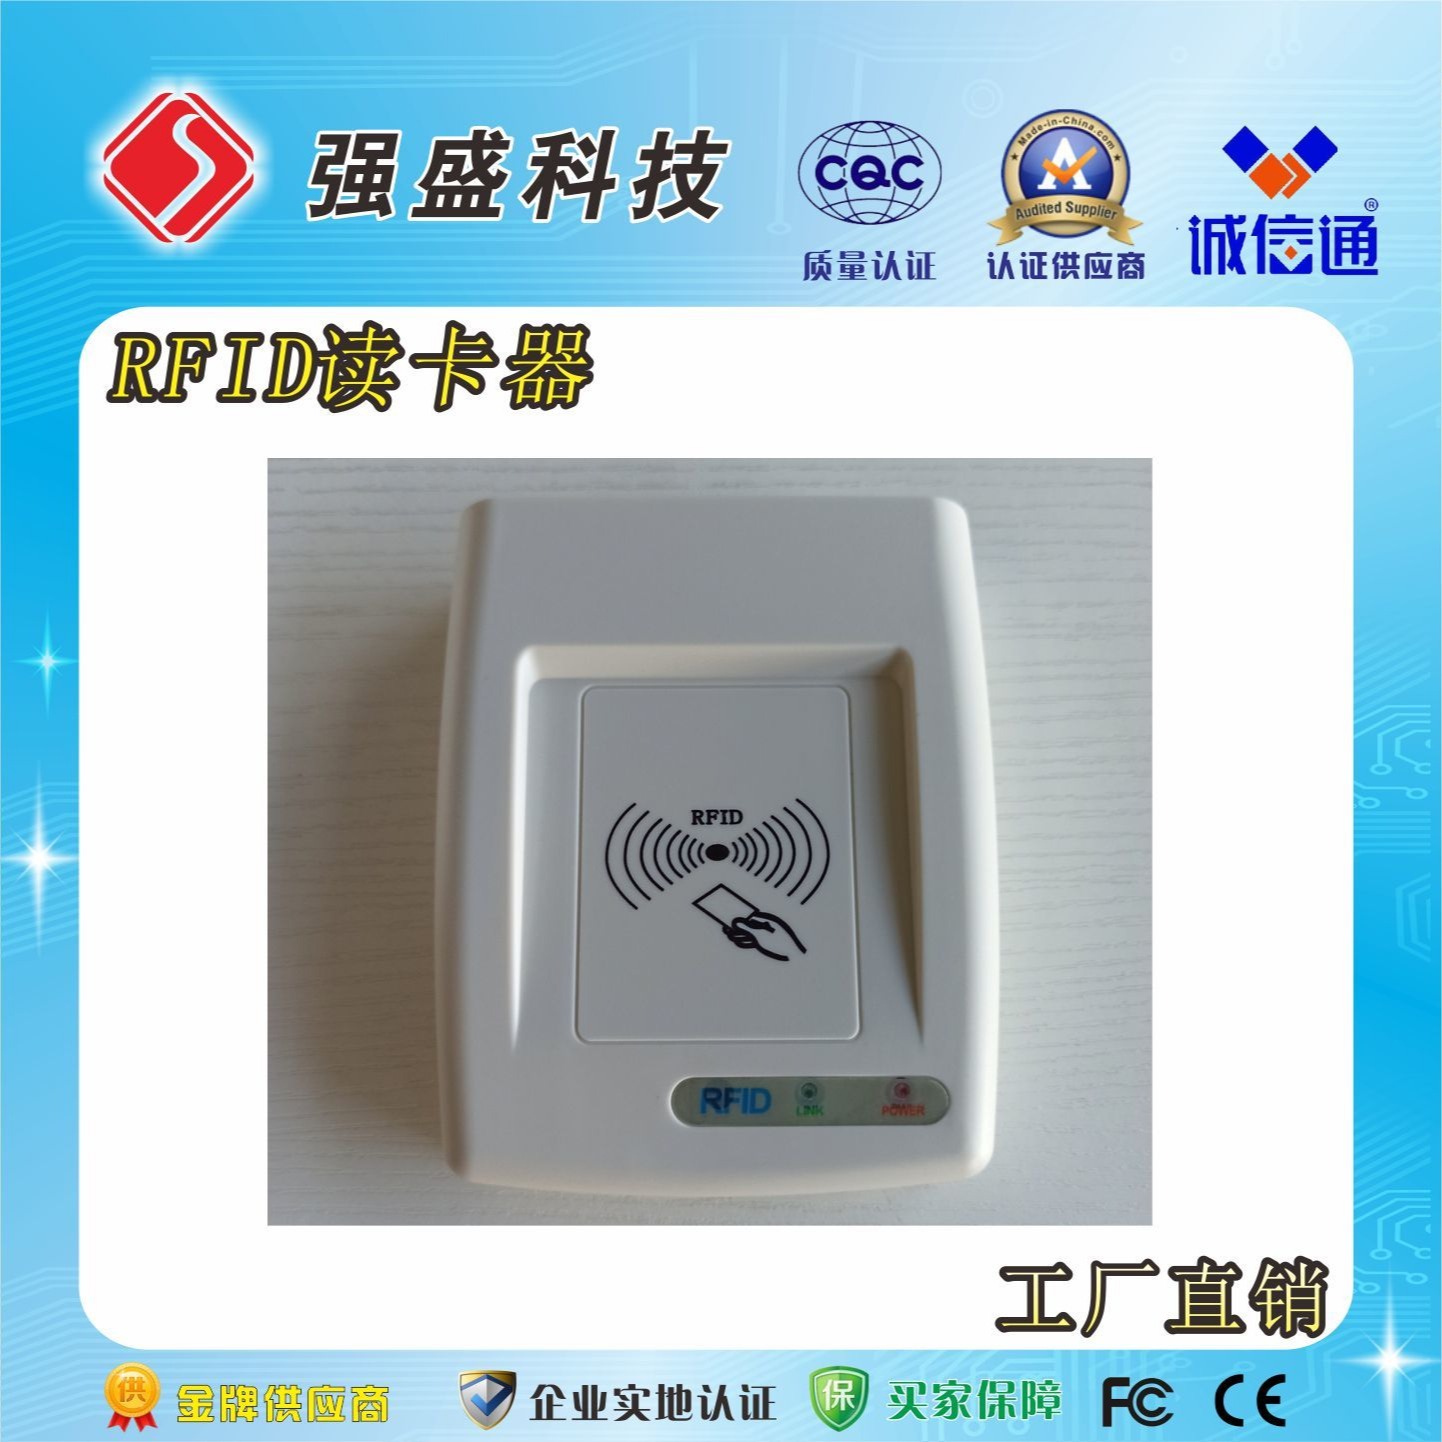 供应IC卡读卡器 QS-IC02 USB接口IC读卡器